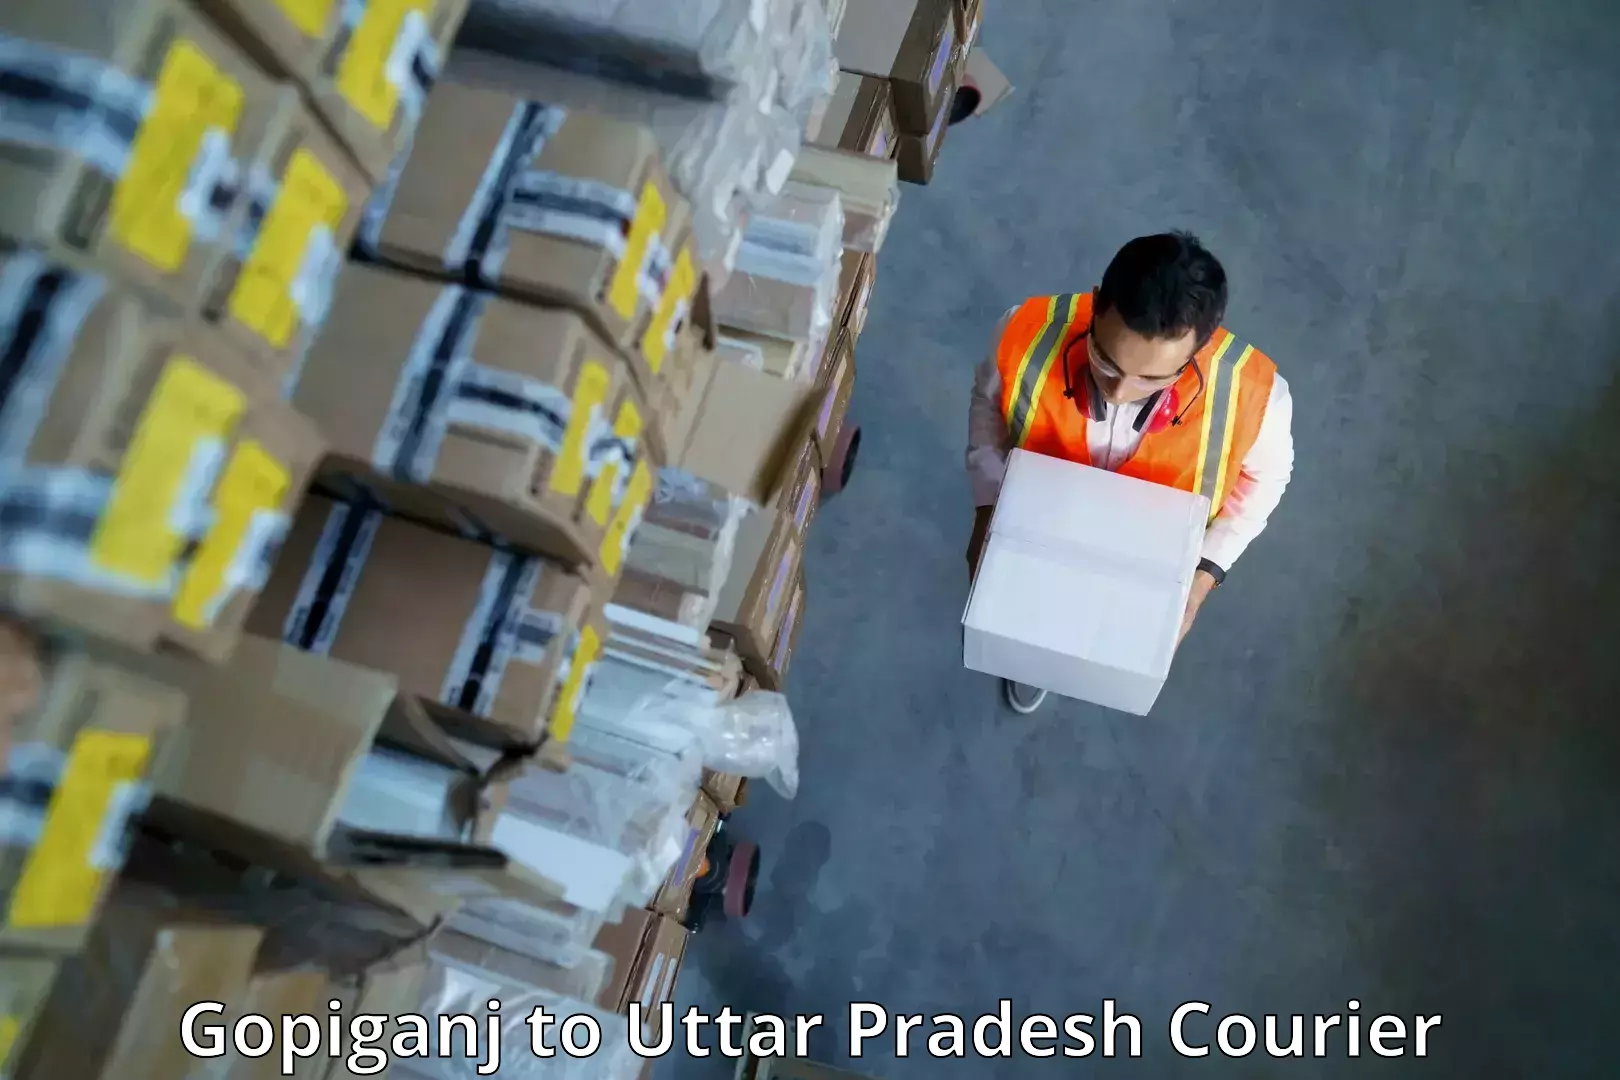 Global courier networks Gopiganj to Uttar Pradesh